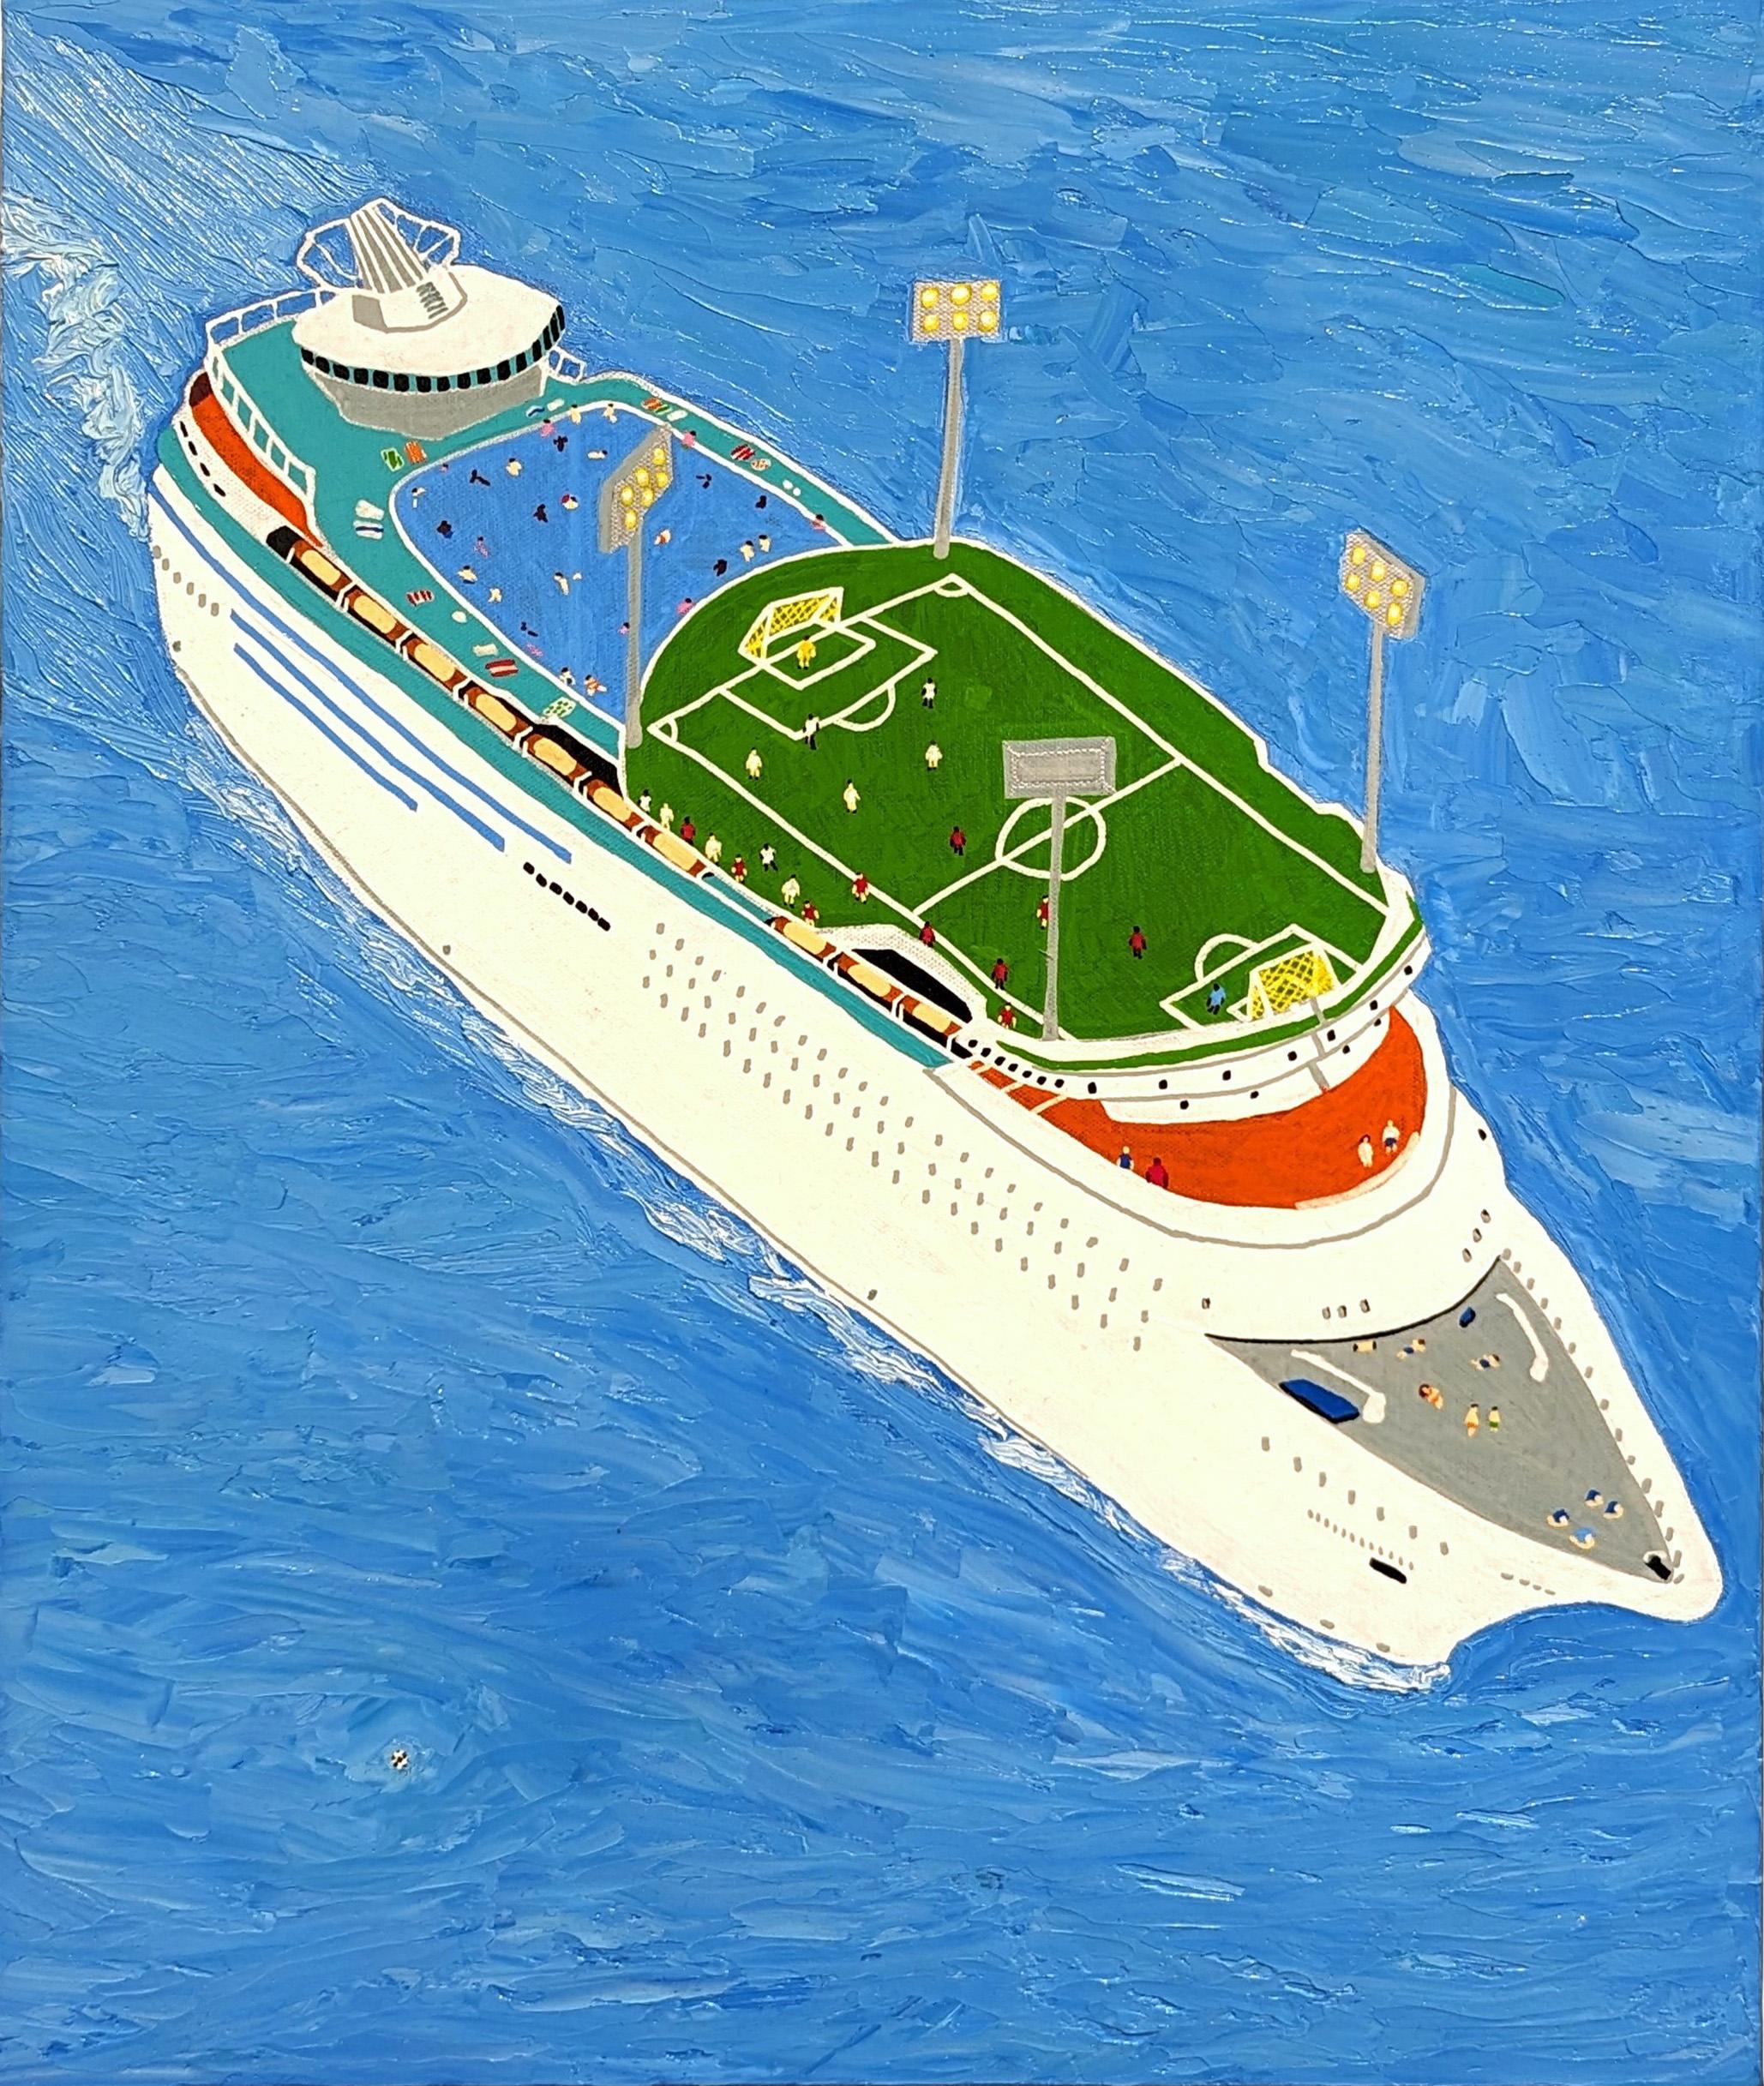 Buntes, humorvolles Gemälde des in Memphis lebenden zeitgenössischen Künstlers Alex Paulus. Das Werk zeigt ein Kreuzfahrtschiff mit vielen kleinen Figuren, die an verschiedenen Aktivitäten wie Schwimmen, Fußball und Sonnenbaden teilnehmen. Der Titel